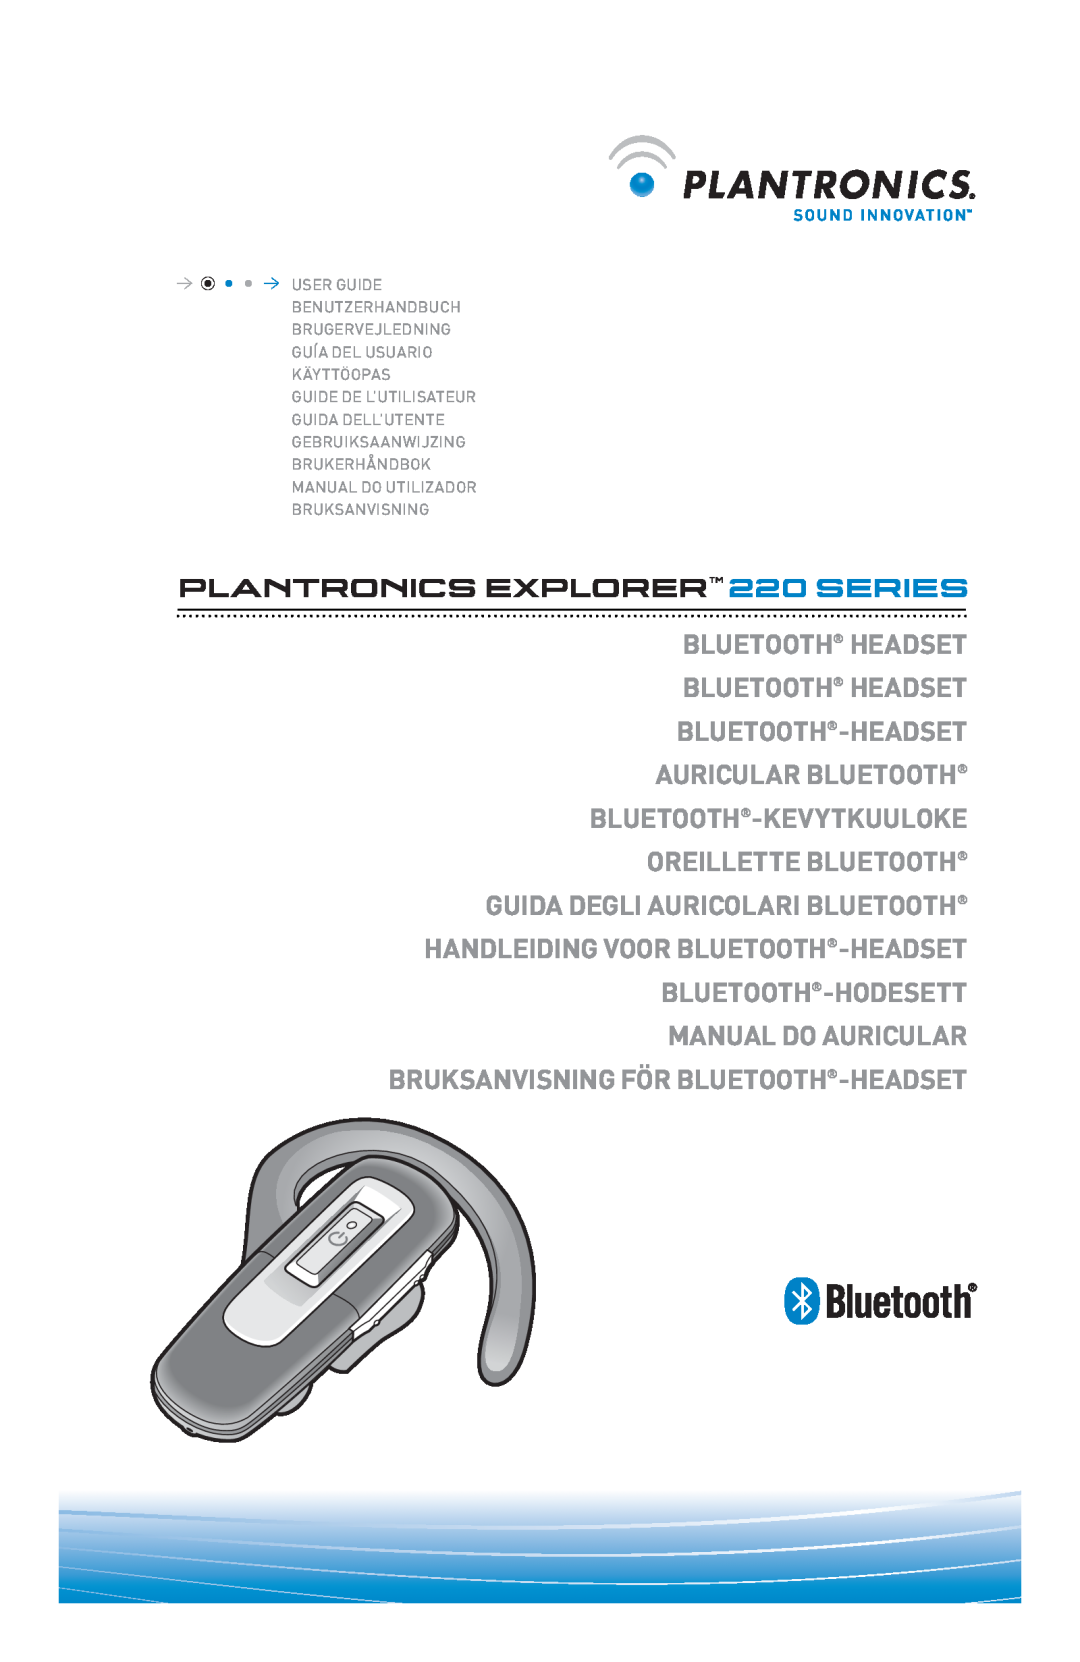 Plantronics manual do utilizador PLANTRONICS EXPLORER 220 SERIES 